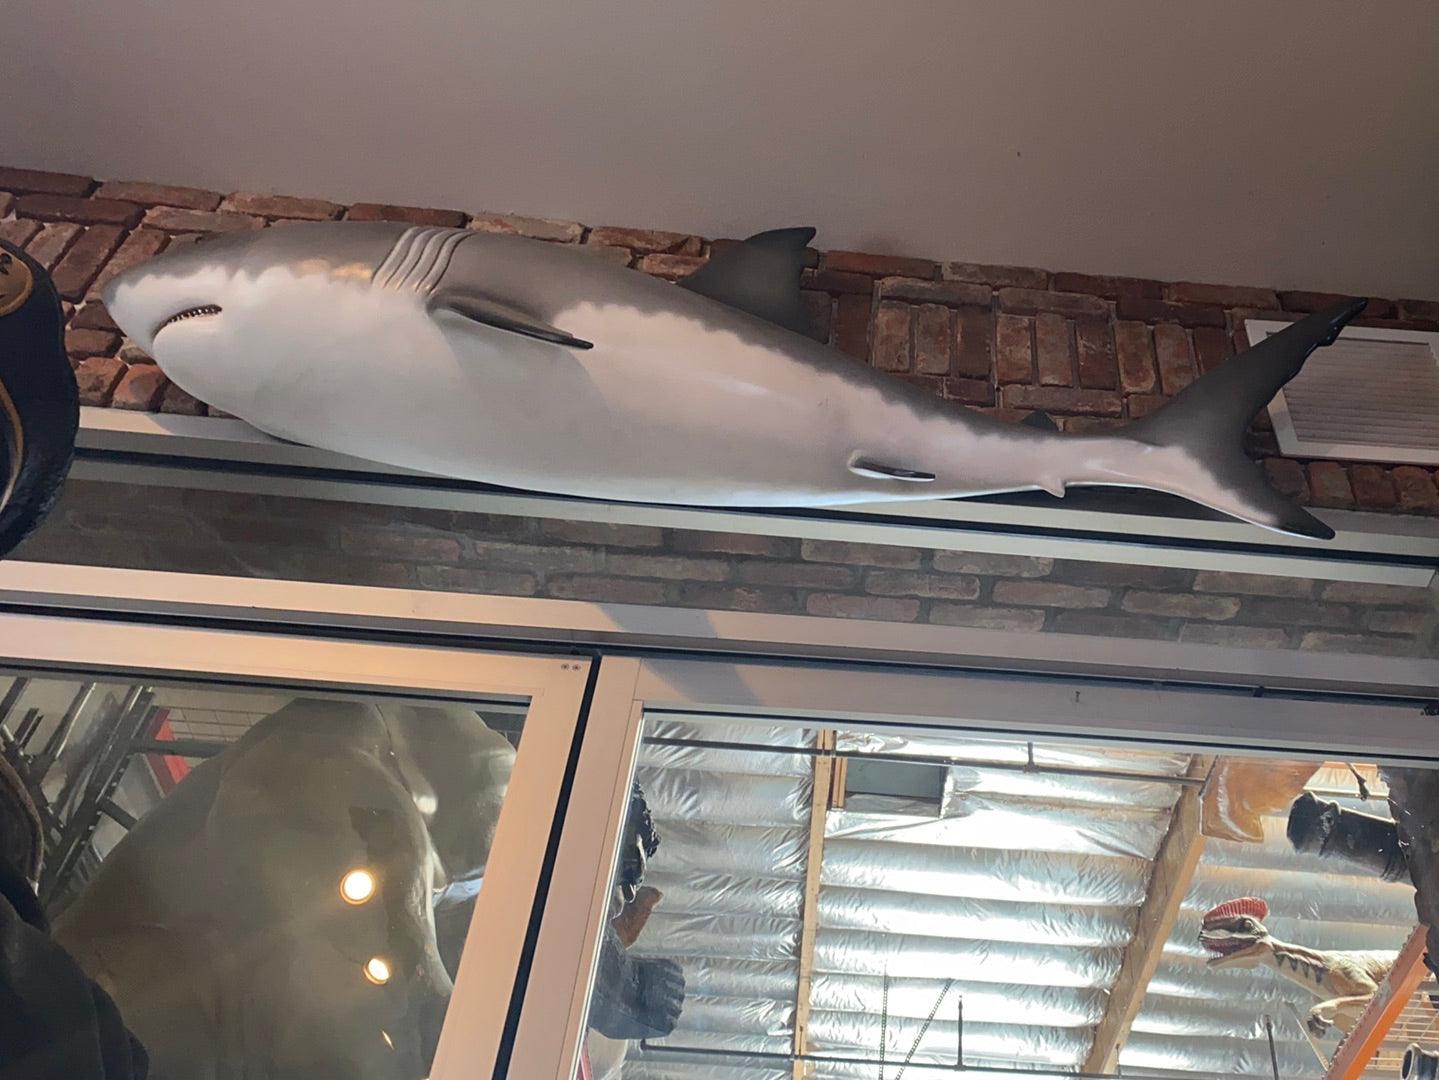 Shark Wall Decor Statue - LM Treasures Prop Rentals 